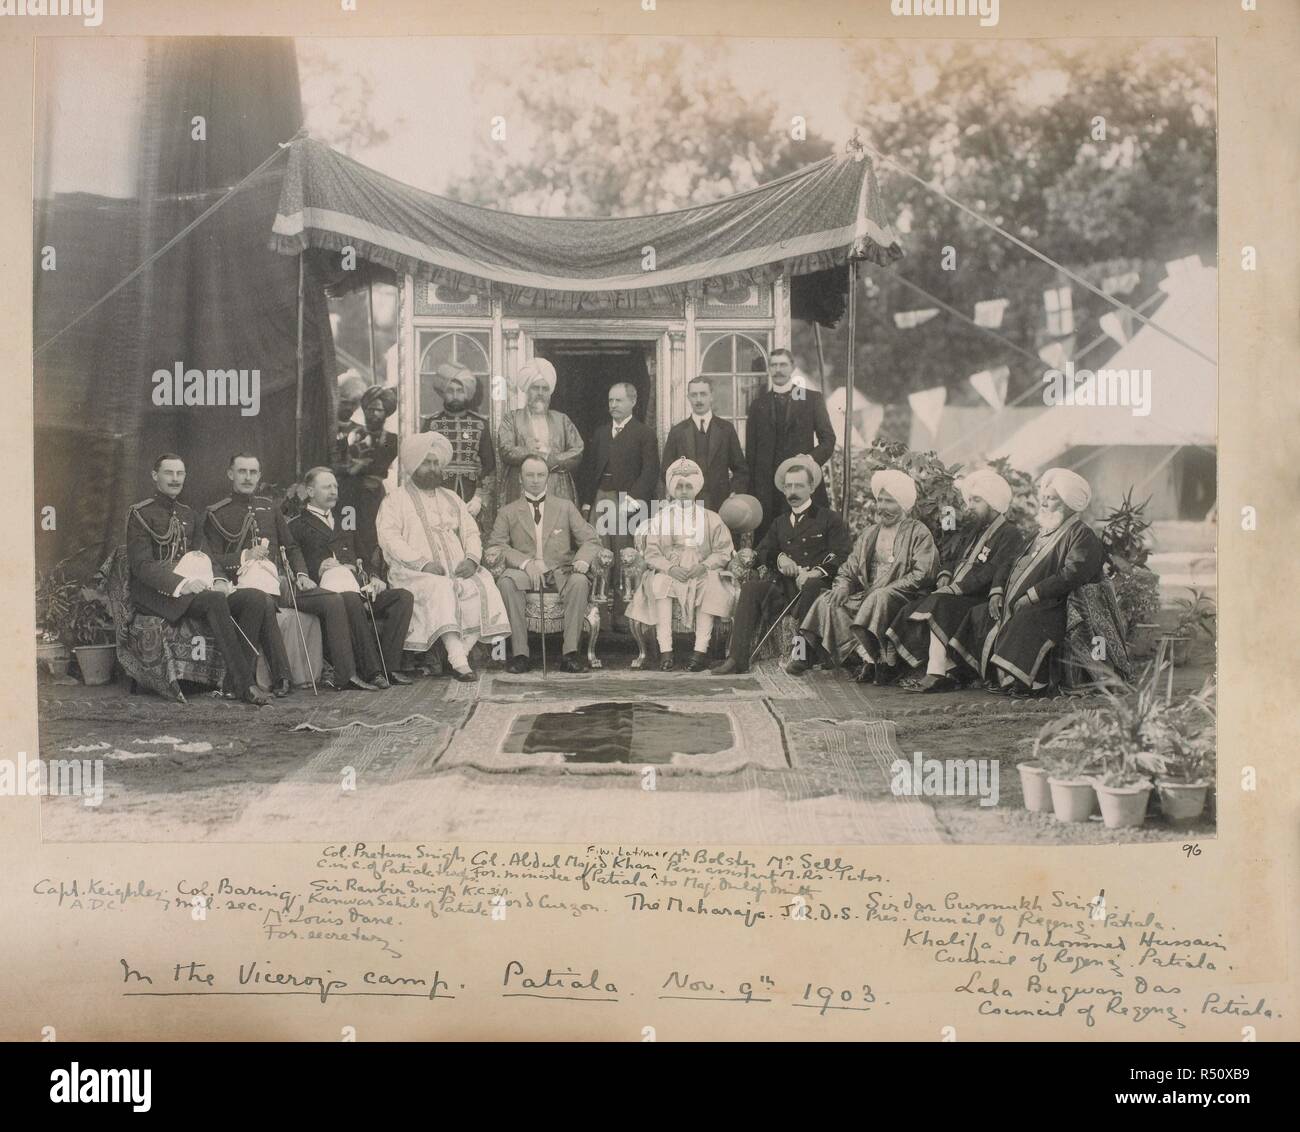 Foto von einer Gruppe einschließlich Lord Curzon und der Maharadscha von Patiala. Im Lager des Vizekönigs, Patiala, 10. November 1903. Sitters genannt; von links: "Capt Keighley, ADC, Kol Baring, MIL-S; Herr Louis Däne, für Staatssekretär; Sir Ranbir Singh, KCSI, Kanwar Sahib von Patiala, Kol Pretum Singh, C in C von Patiala Truppen; Kol Abdul Majid Khan, für Minister von Patiala; Lord Curzon; F.W. Latimer; Der Maharadscha; Herr Kropf, Pers assistent Maj Dunlop Smith; Herr verkauft, Herrn Tutor; J.R.D.S. [Dunlop Smith]; Sirdar Gurmukh Singh, Pres, der Regentschaftsrat, Patiala; Khalifa Mahomed Hussain, der Regentschaftsrat, Patia Stockfoto